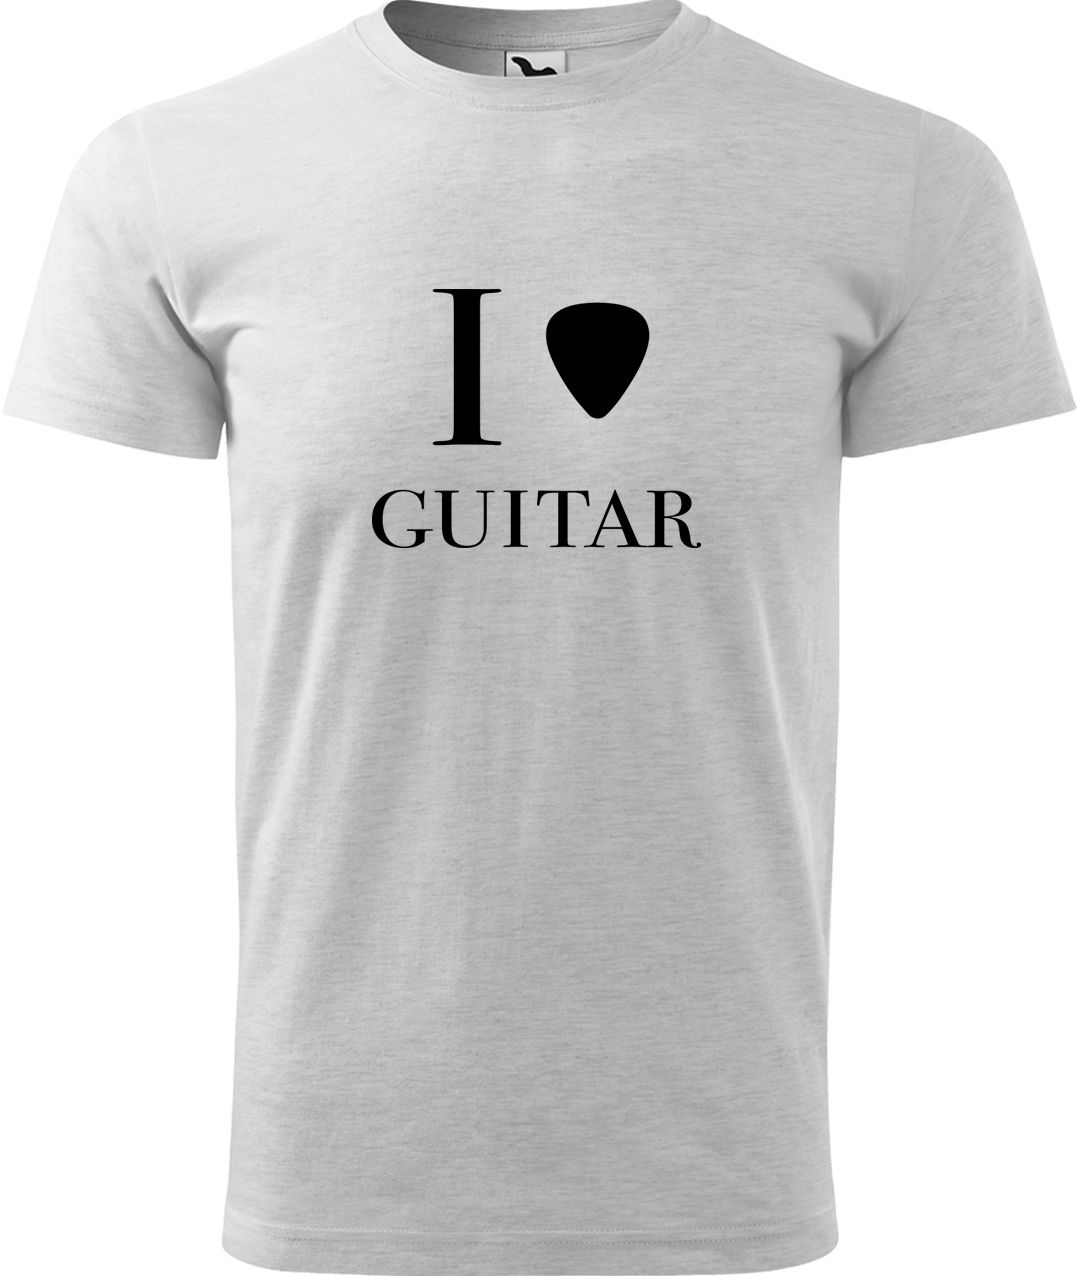 Pánské tričko s kytarou - I love guitar Velikost: L, Barva: Světle šedý melír (03), Střih: pánský